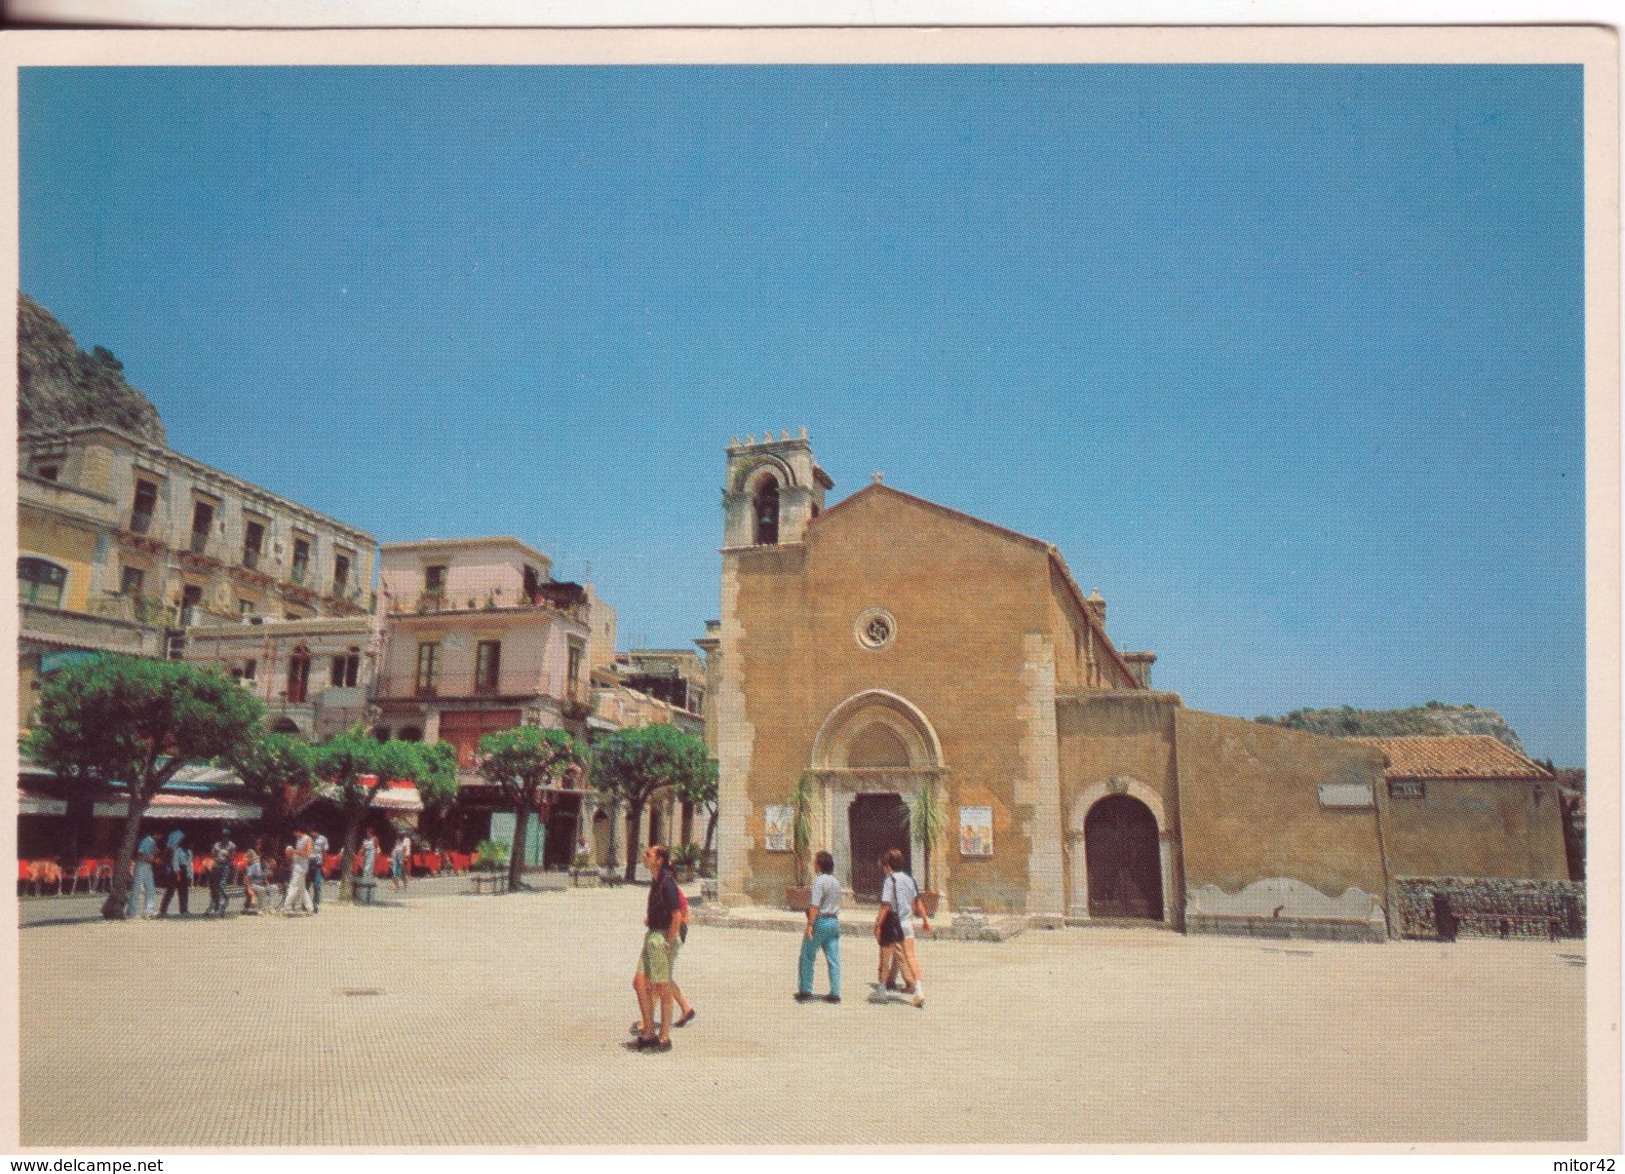 189-Taormina-Messina-Sicilia-Piazza 9 Aprie E Biblioteca-Nuova-Nouveau-New - Mazara Del Vallo